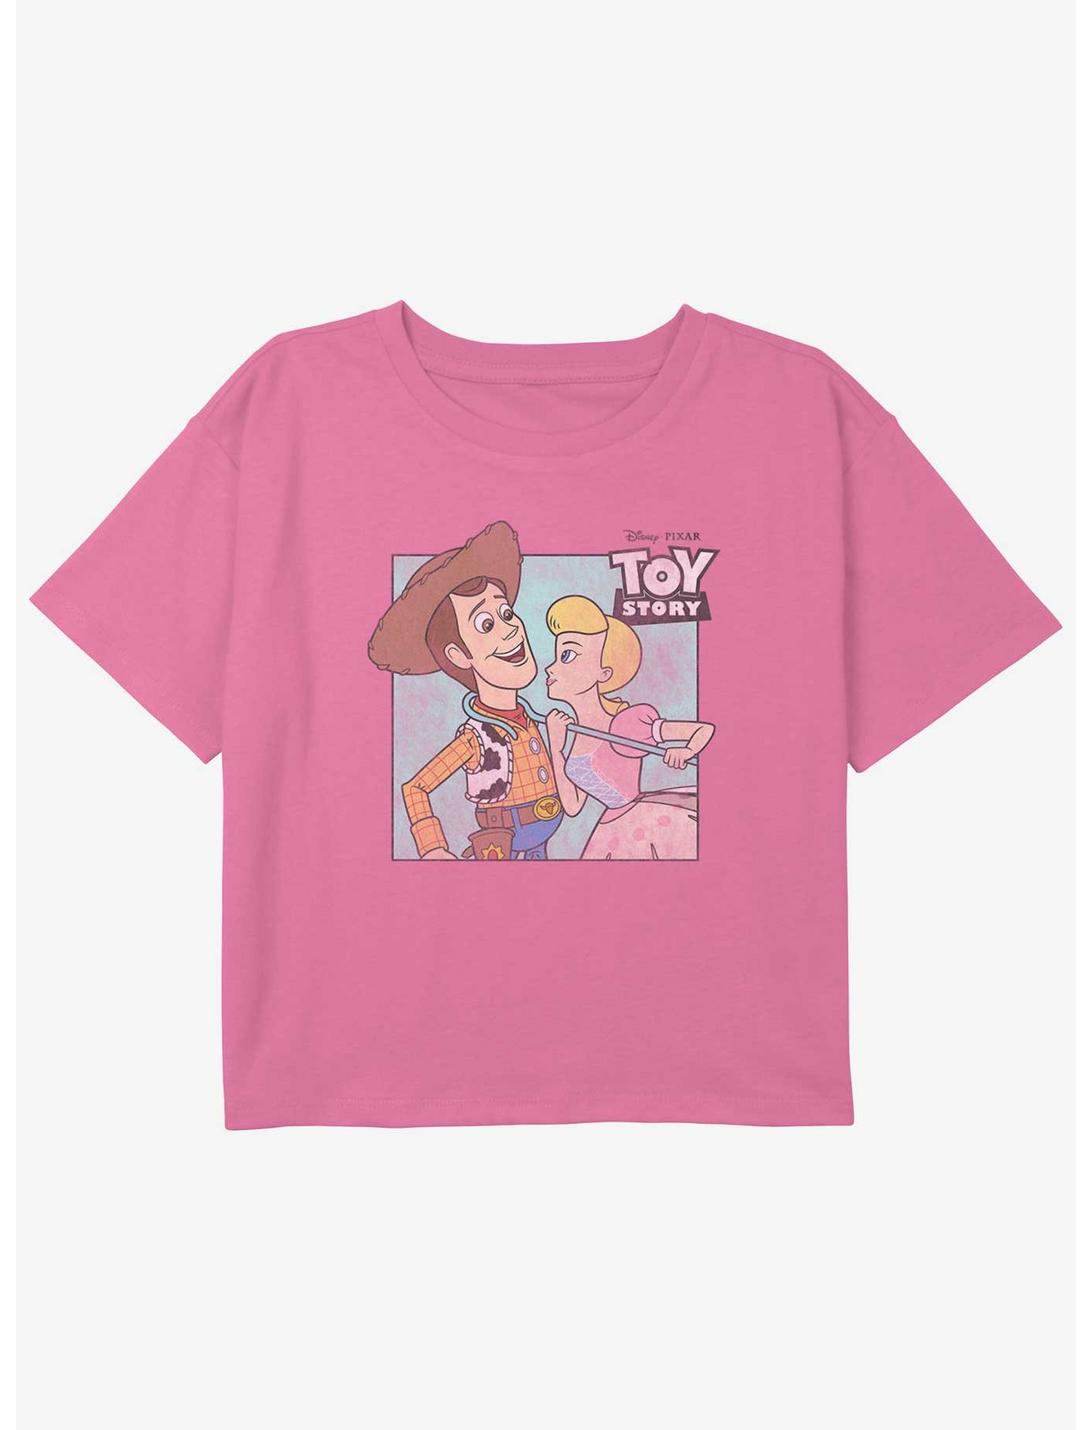 Disney Pixar Toy Story Woody & Bo Peep Girls Youth Crop T-Shirt, PINK, hi-res